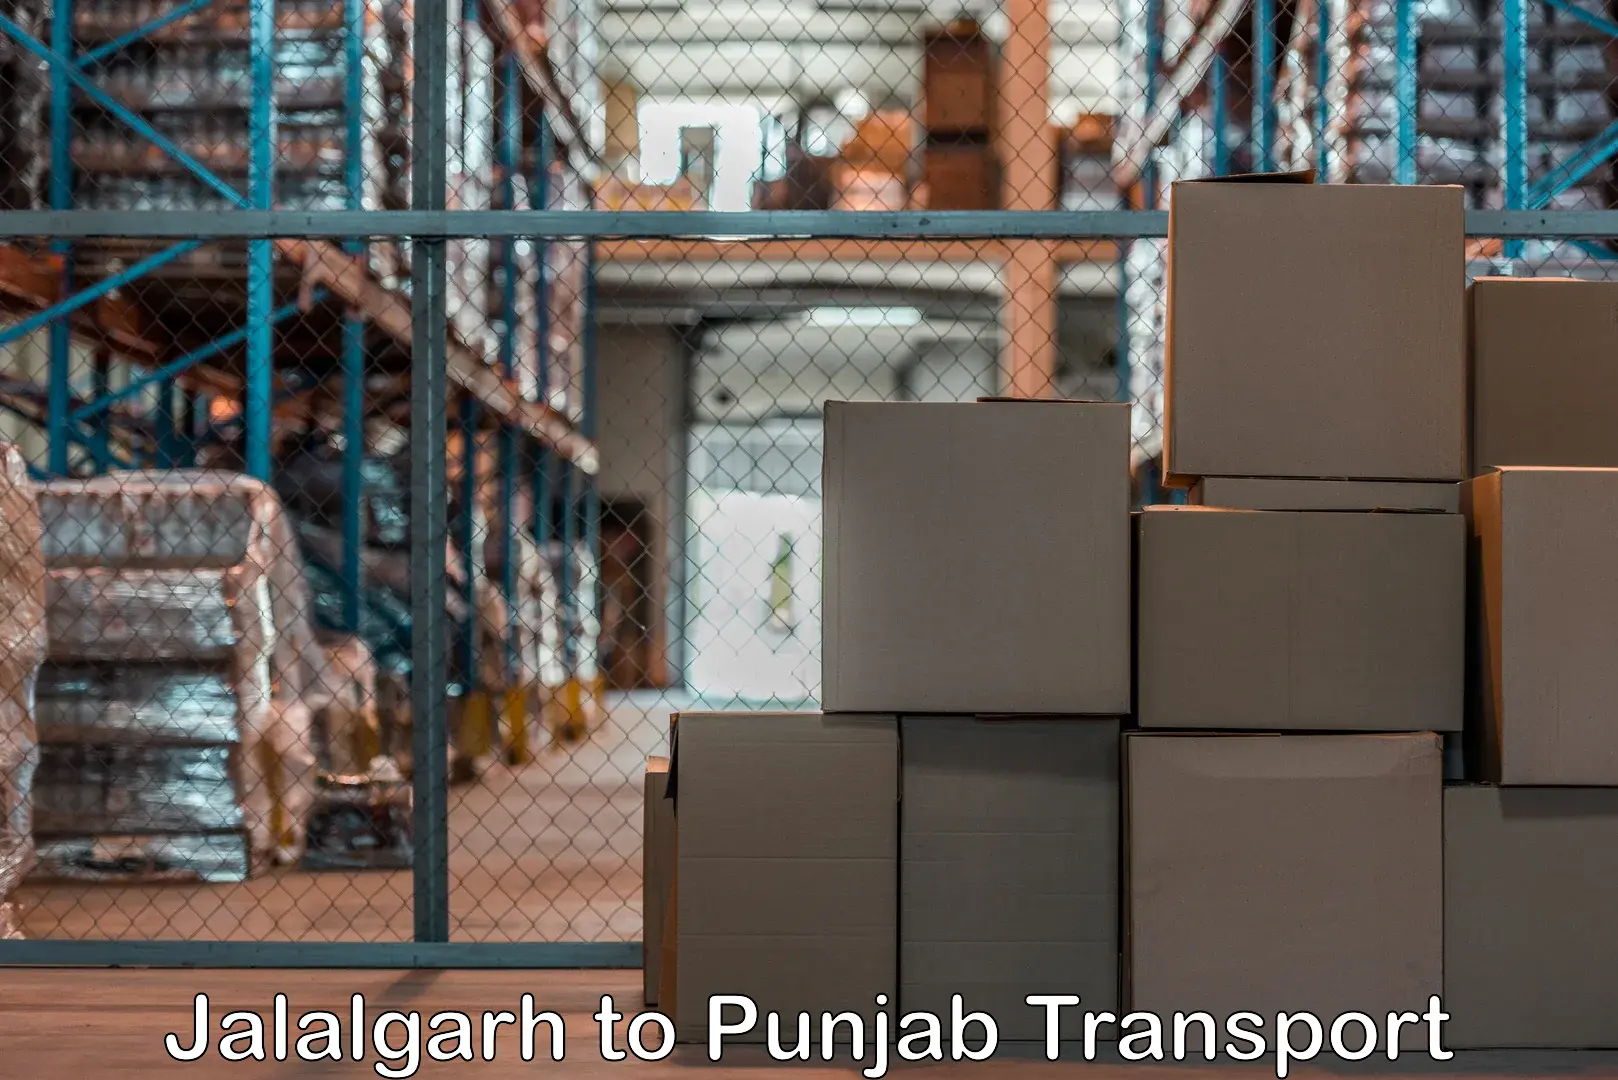 Logistics transportation services Jalalgarh to Amritsar